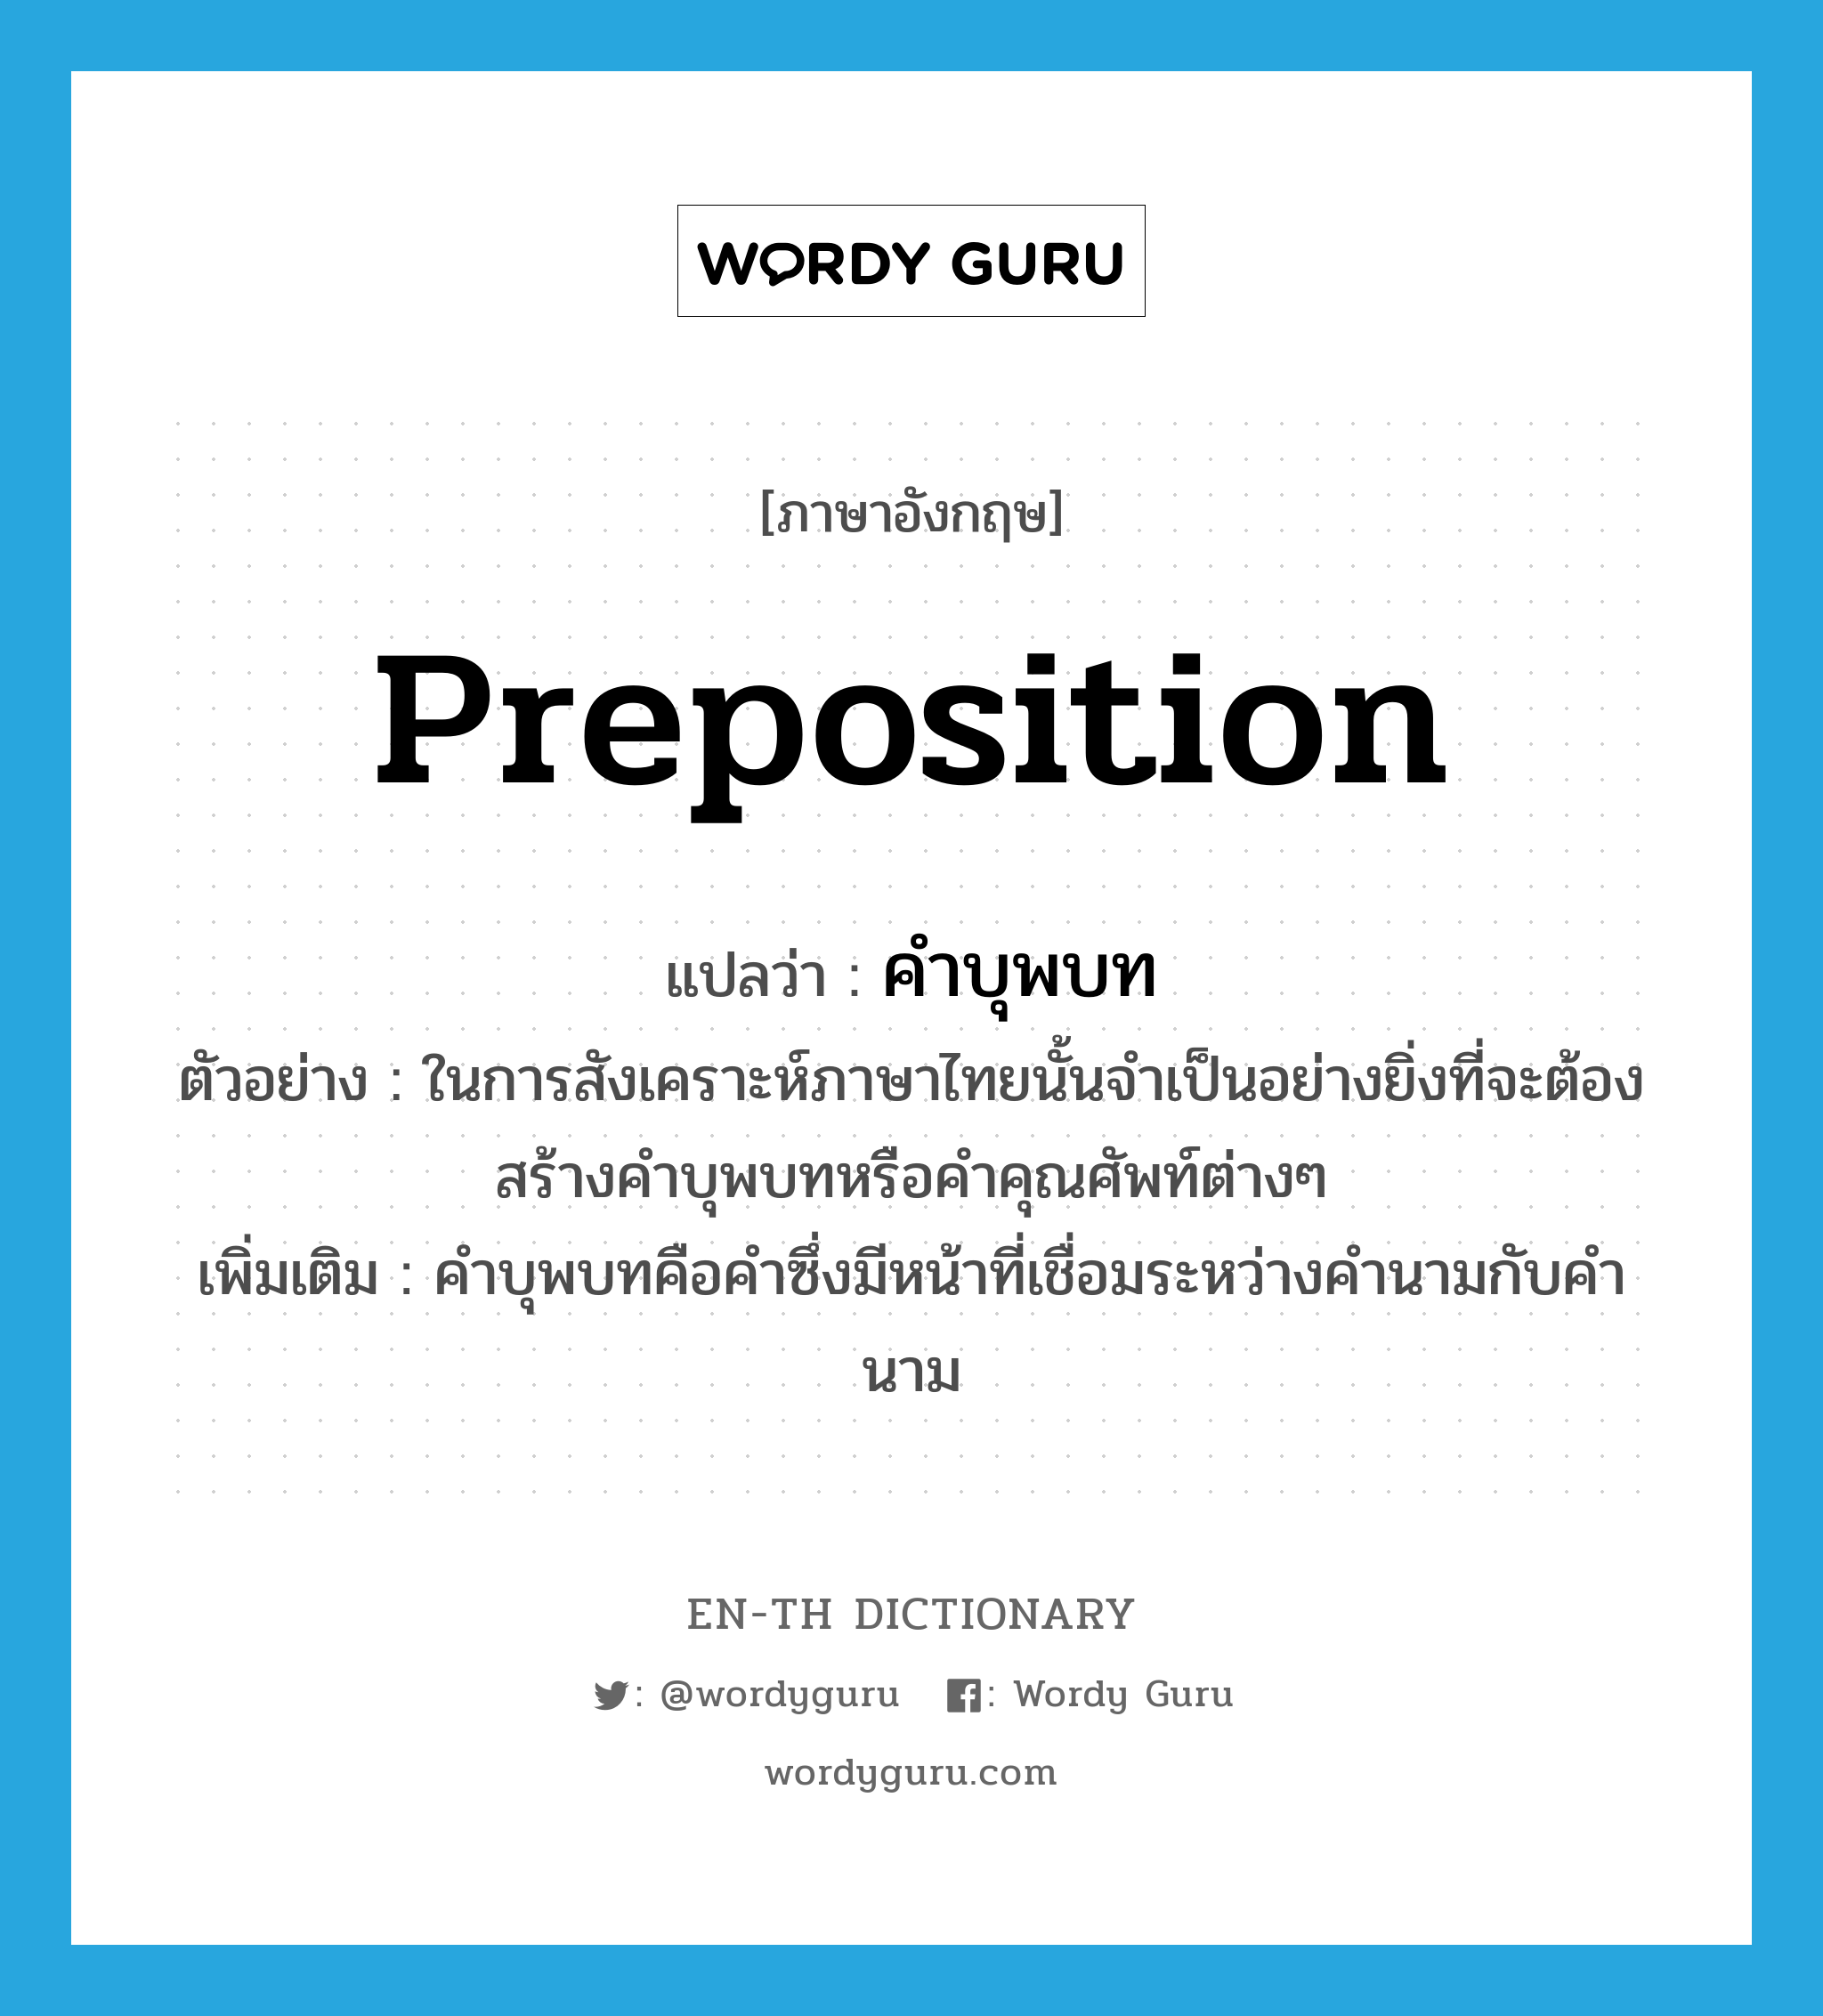 preposition แปลว่า?, คำศัพท์ภาษาอังกฤษ preposition แปลว่า คำบุพบท ประเภท N ตัวอย่าง ในการสังเคราะห์ภาษาไทยนั้นจำเป็นอย่างยิ่งที่จะต้องสร้างคำบุพบทหรือคำคุณศัพท์ต่างๆ เพิ่มเติม คำบุพบทคือคำซึ่งมีหน้าที่เชื่อมระหว่างคำนามกับคำนาม หมวด N